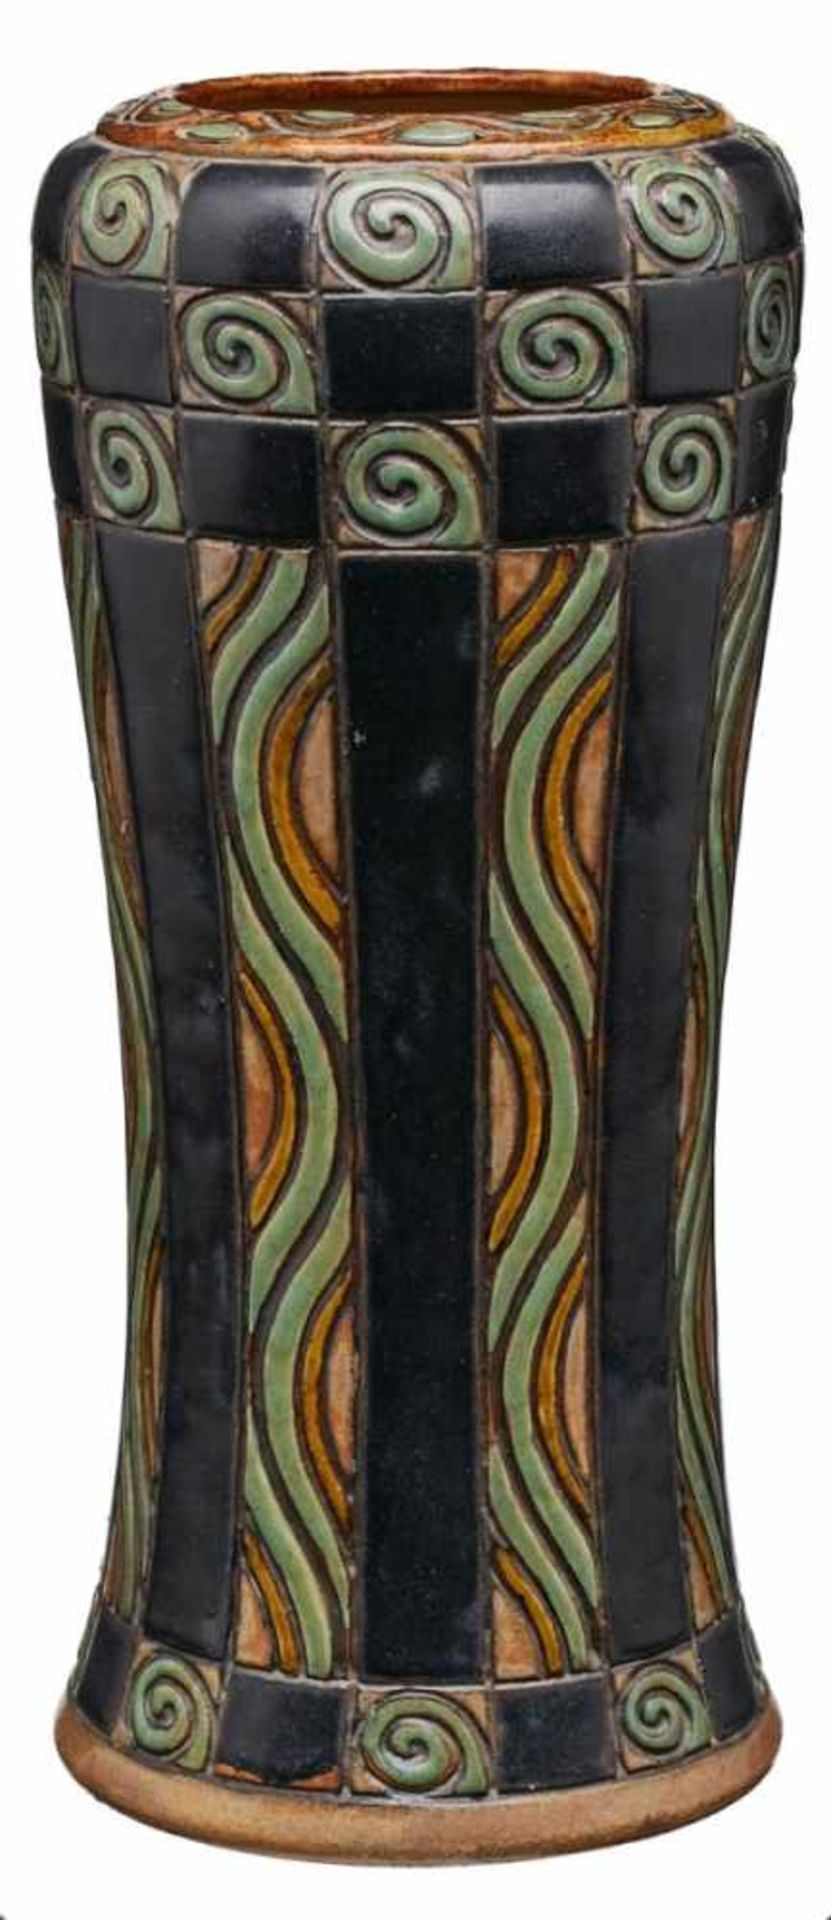 Vase mit graphischem Dekor, Arts & Crafts,Royal Doulton um 1915. Heller Scherben, braun/ schwarz/